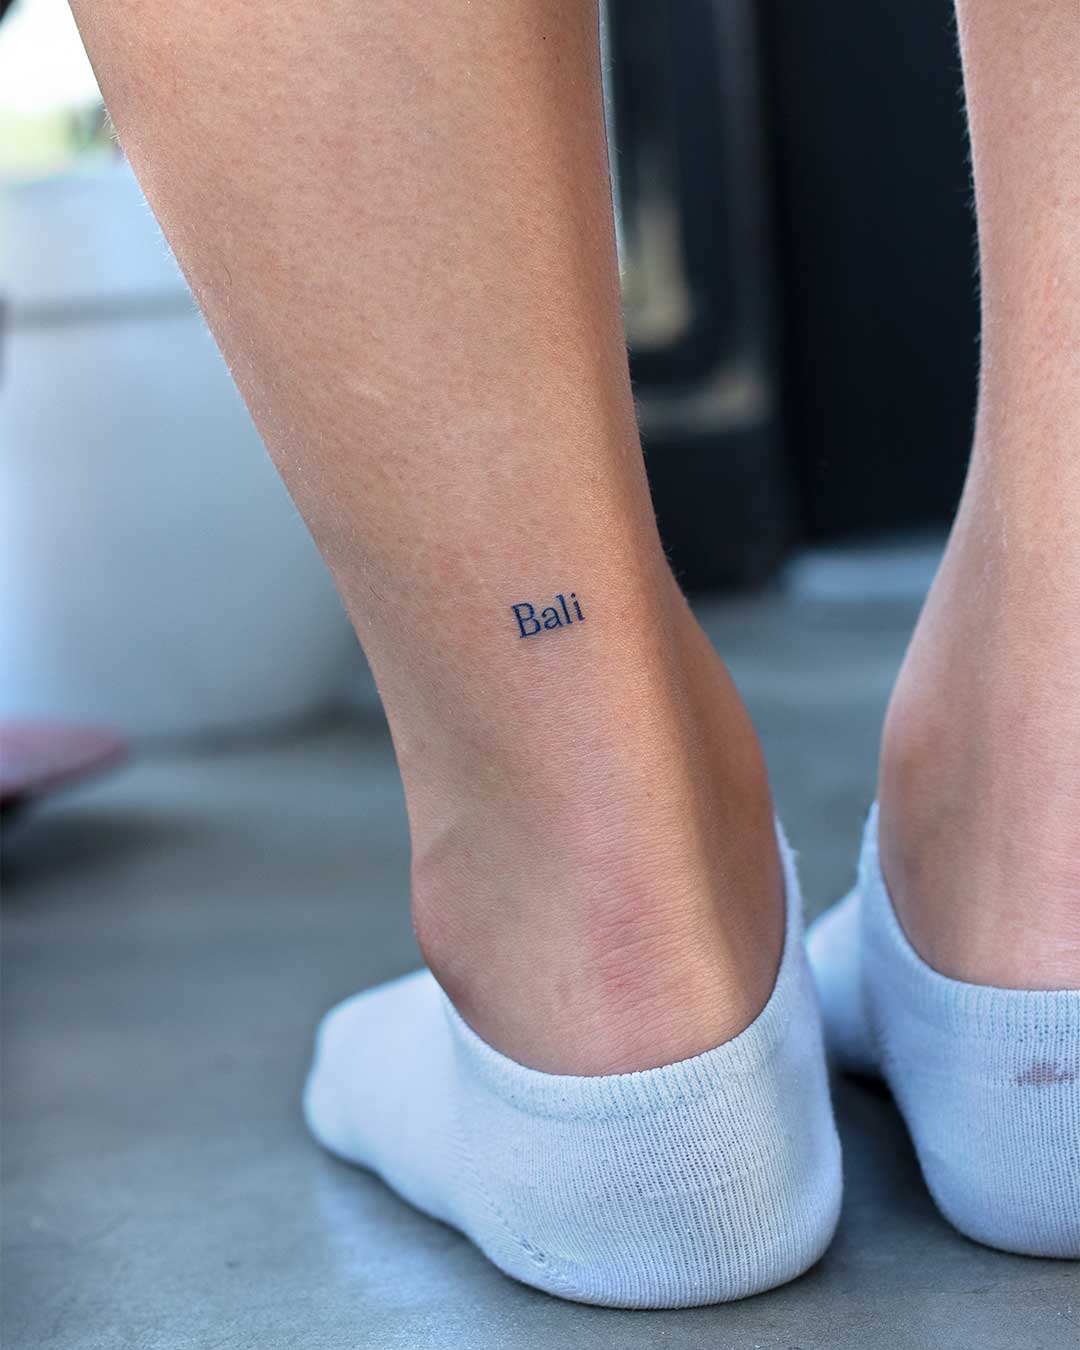 27 Tiny Tattoos That Will Make A Big Statement | Ankle tattoo small, Ankle  tattoos, Tiny tattoos